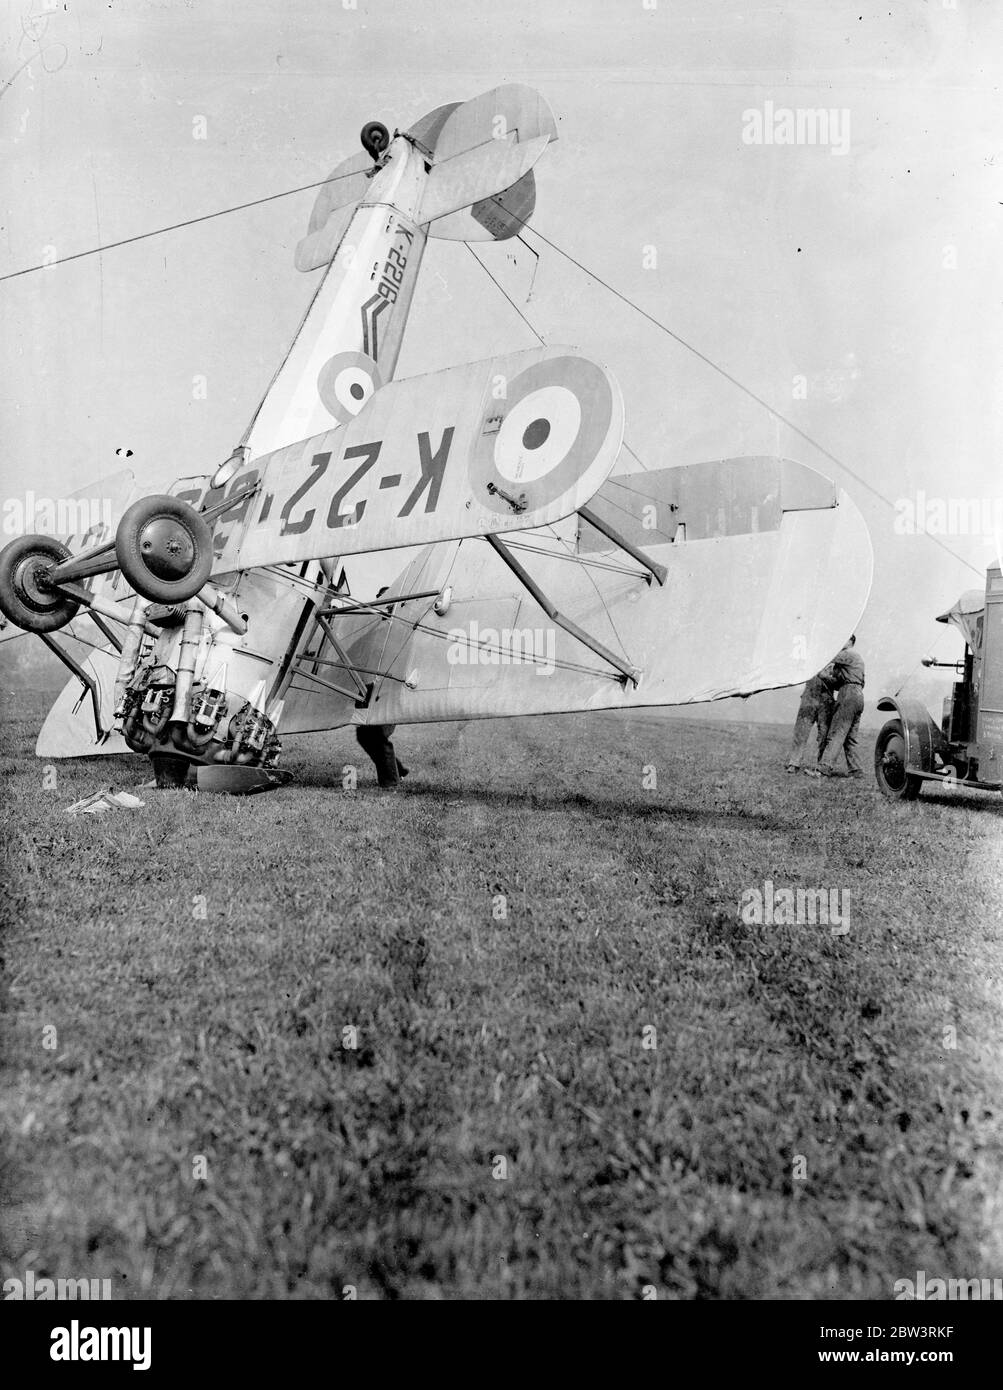 Ein Bristol Bulldog Mk II A von No. 17 Squadron Royal Air Force an der Royal Air Force Station Kenley, Surrey, Registrierung K2216 nach seinem Unfall (links), in dem bei der Landung beim Bremsen das Flugzeug umgedreht. Der Pilot wurde den Absturz lebendig gelassen, aber der Flugzeugschaden war nicht repariert. Der Absturz ereignete sich während der Proben für Empire Air Day, der in diesem Monat stattfinden soll. An diesem Tag werden die RAF-Flugplätze für die öffentliche Inspektion geöffnet. Foto zeigt s die Bristol Bulldog wird durch Boden persönlichen nach Unfall geradelt . Mai 1936 Stockfoto